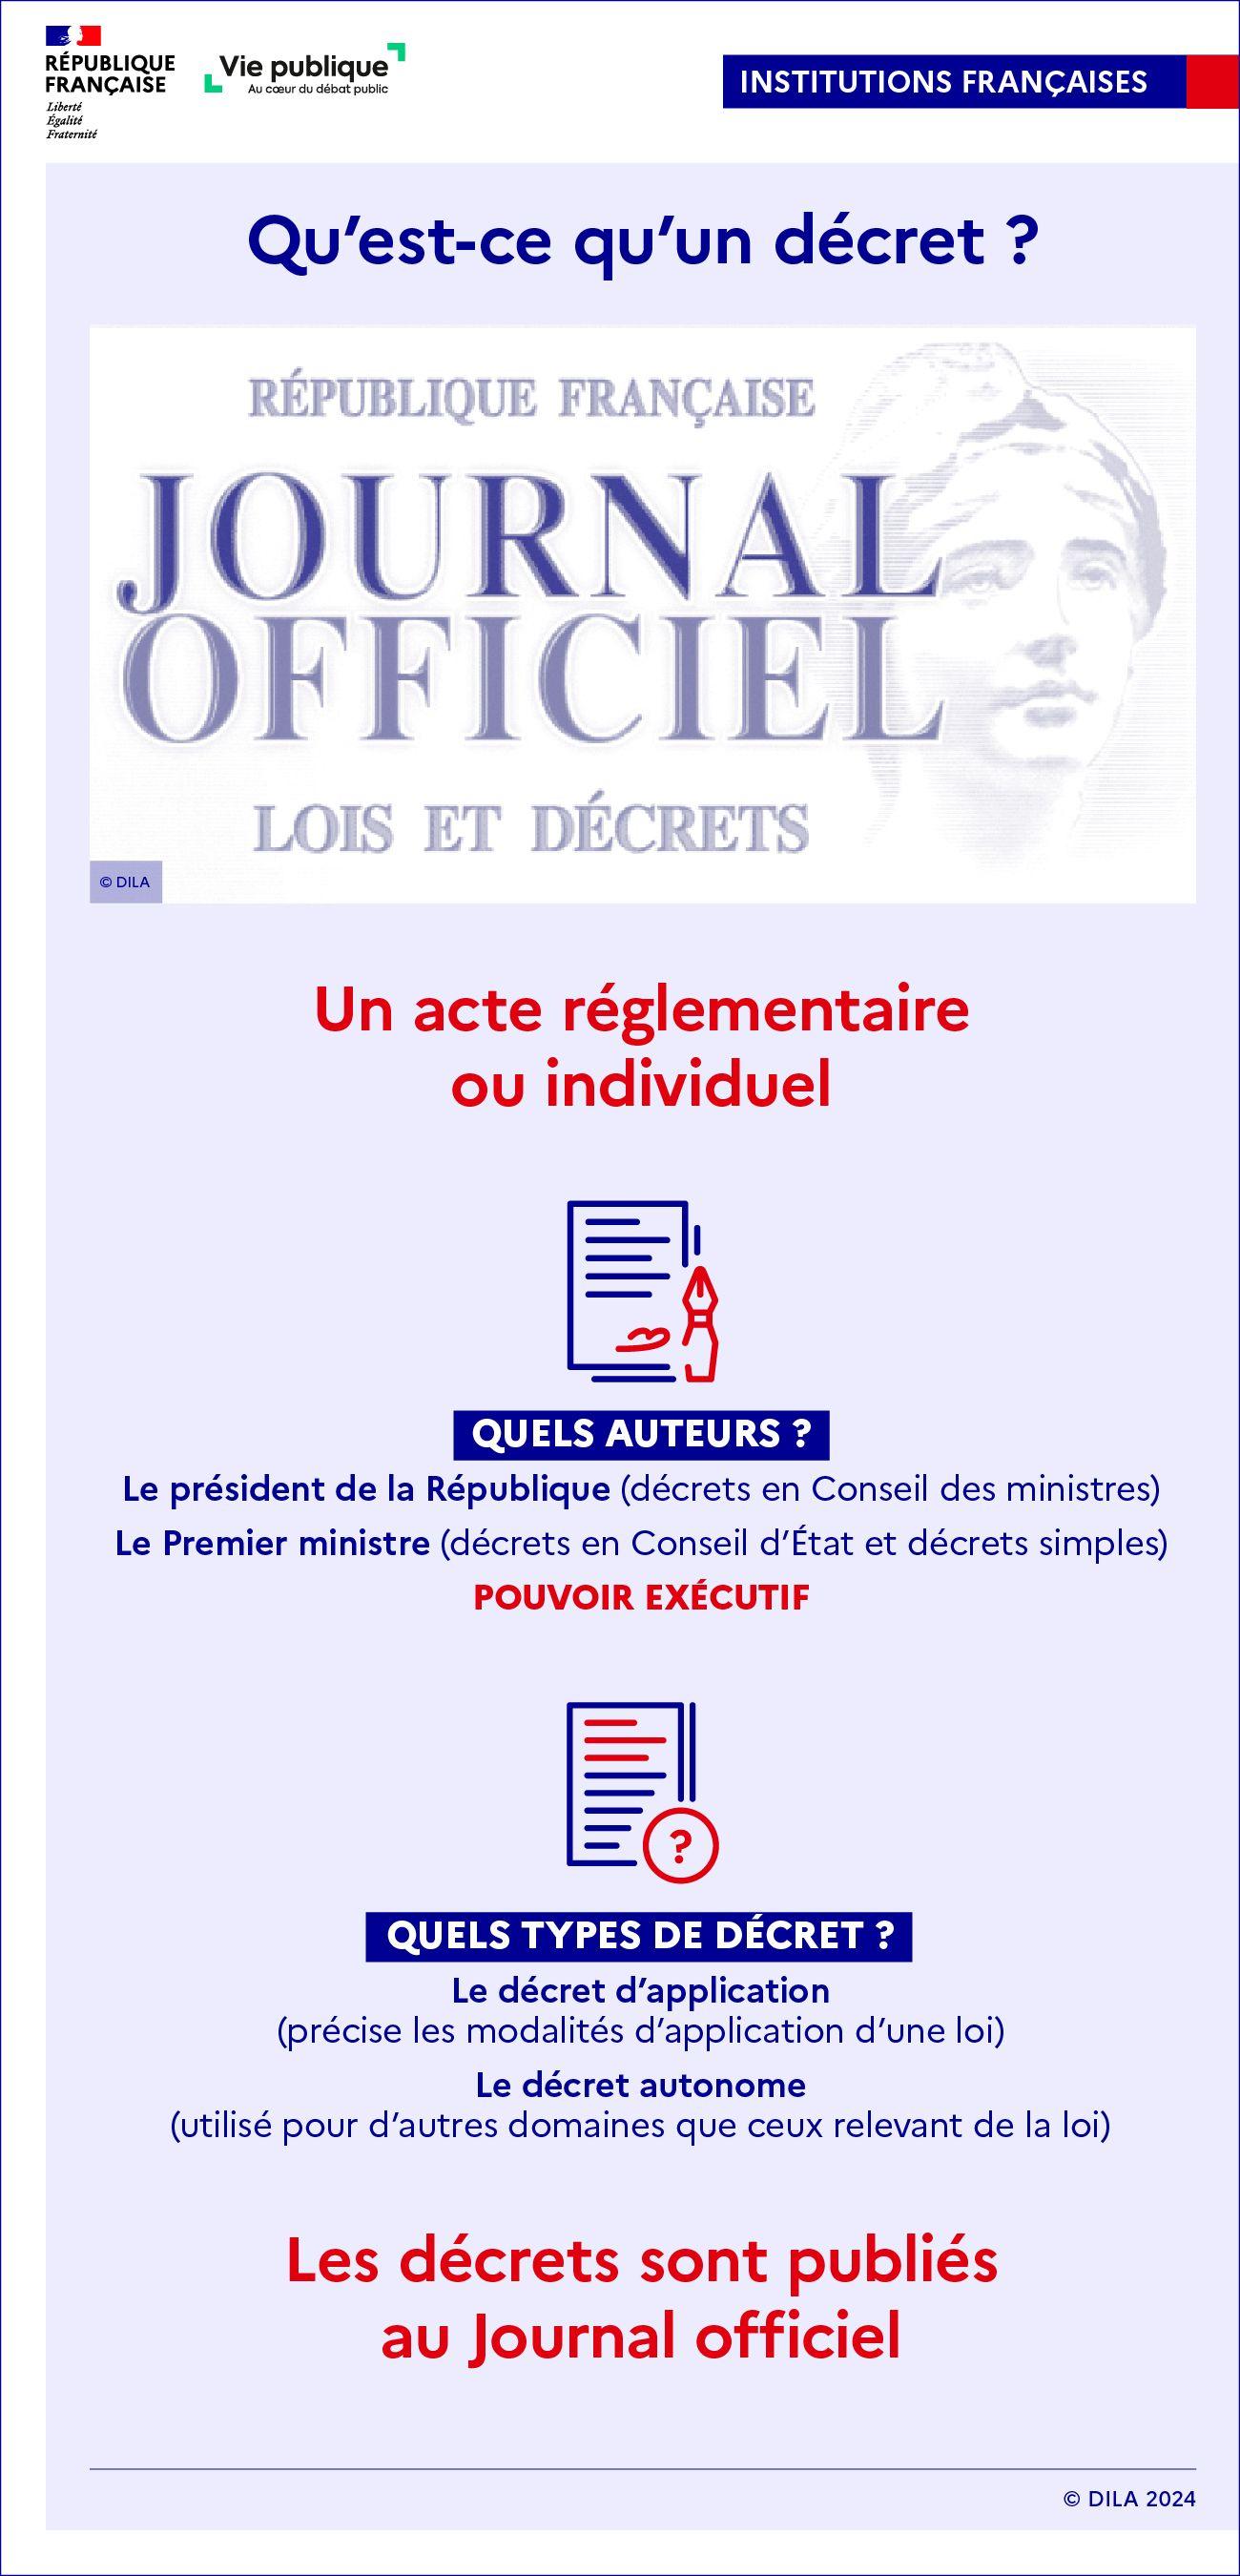 Infographie sur le décret : nature, auteurs, publication.